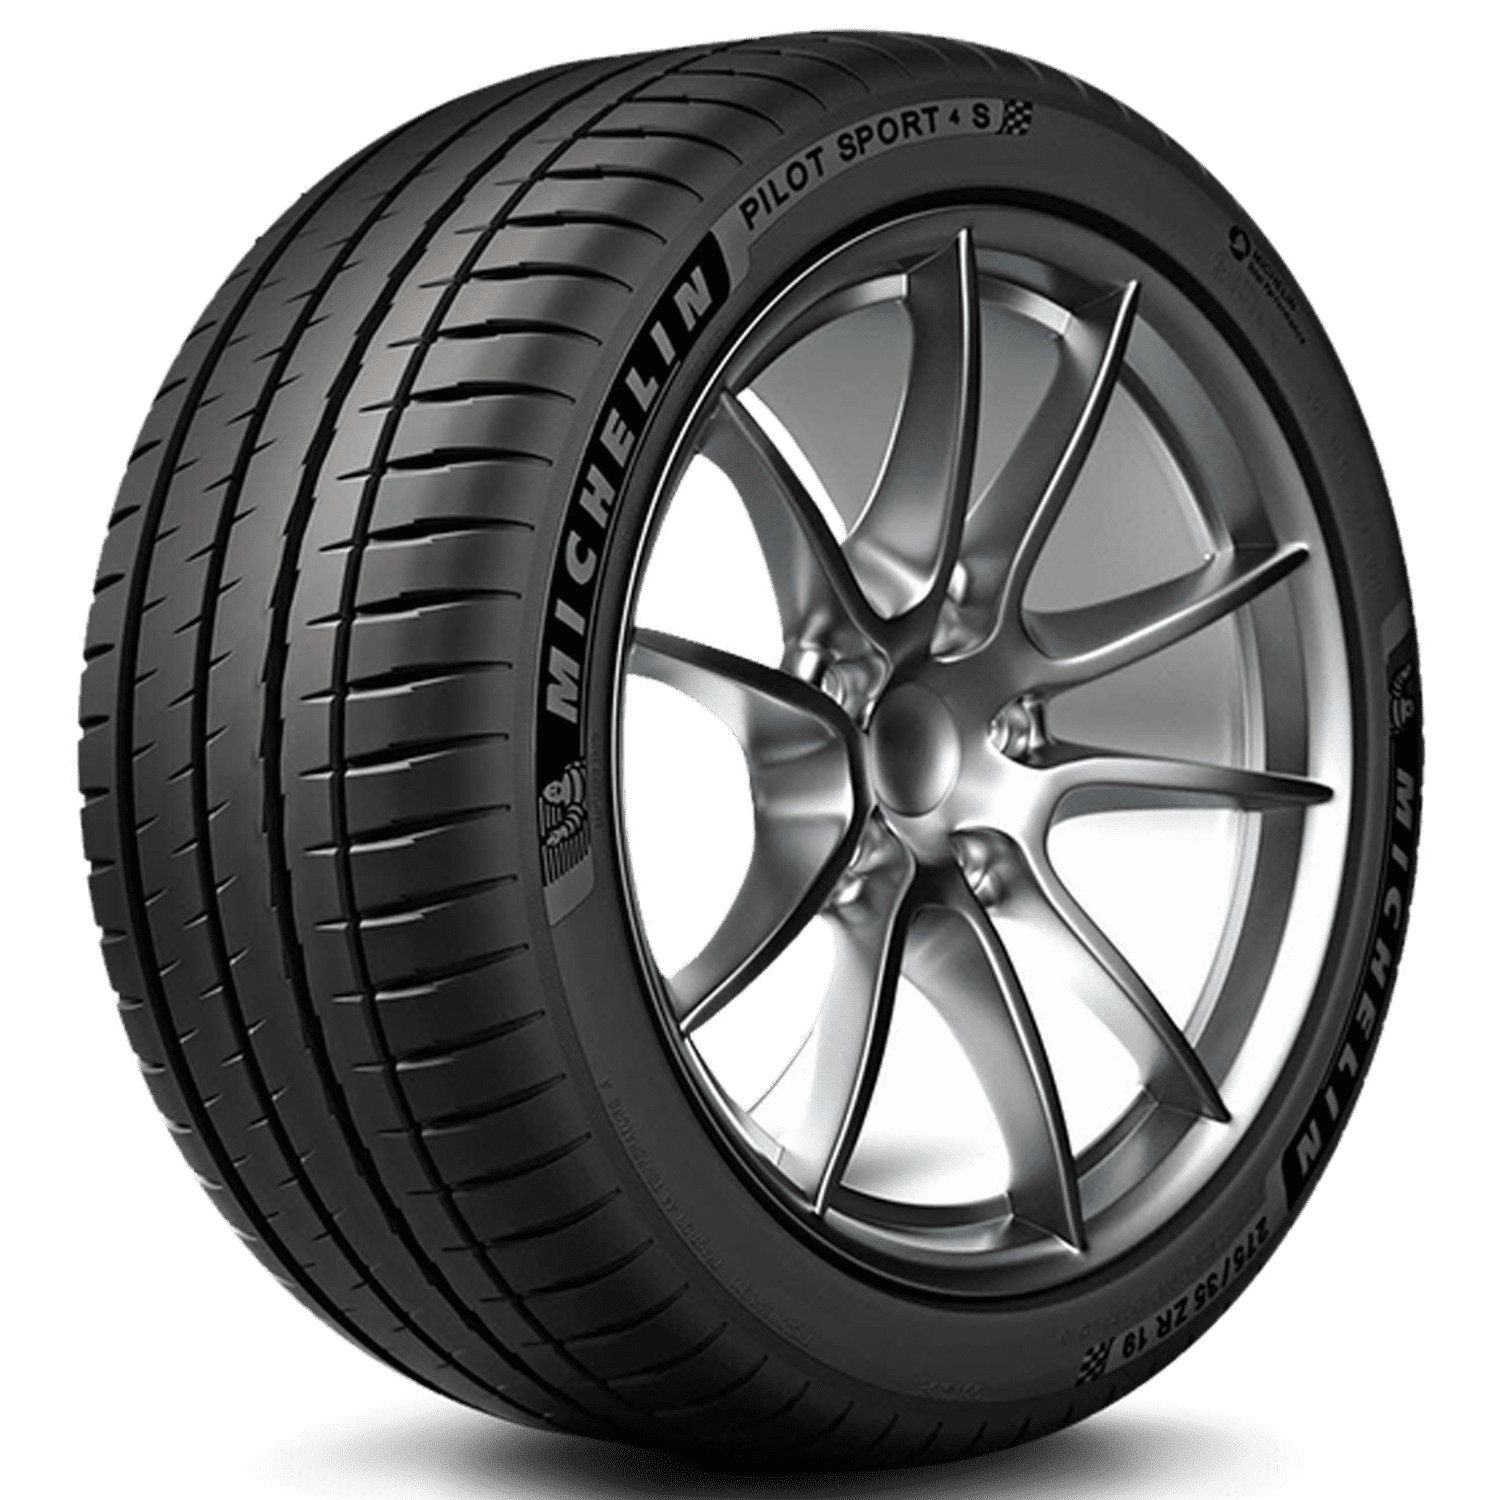 Y S Pilot 4 95 Tire Michelin Sport 235/40-18